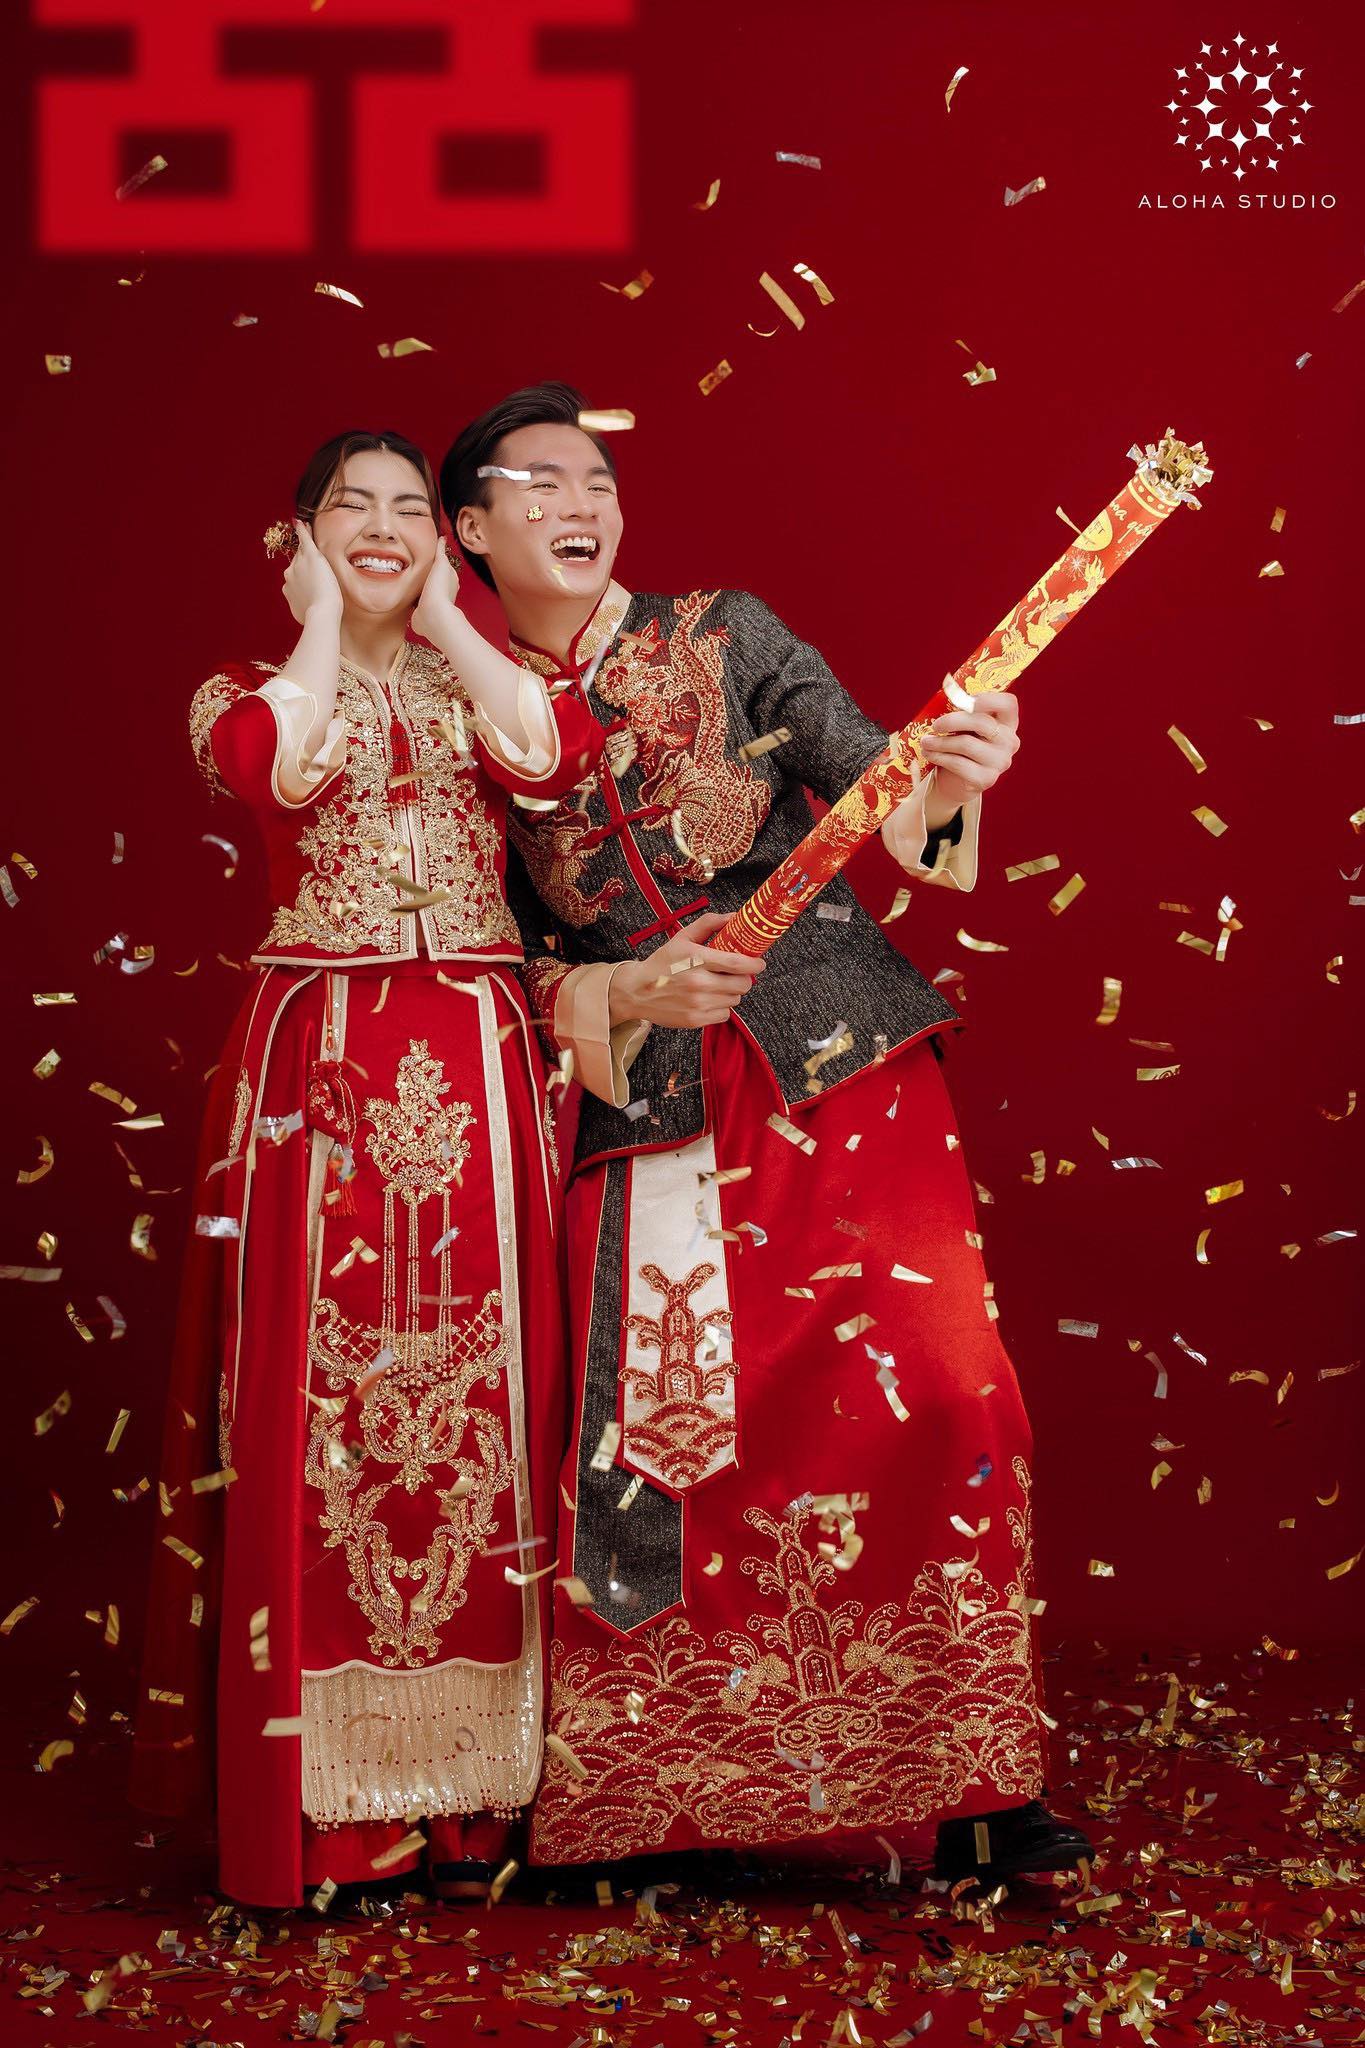 Xếp hạng 10 studio chụp ảnh cưới đẹp nhất Thành phố Hồ Chí Minh - Aloha Studio